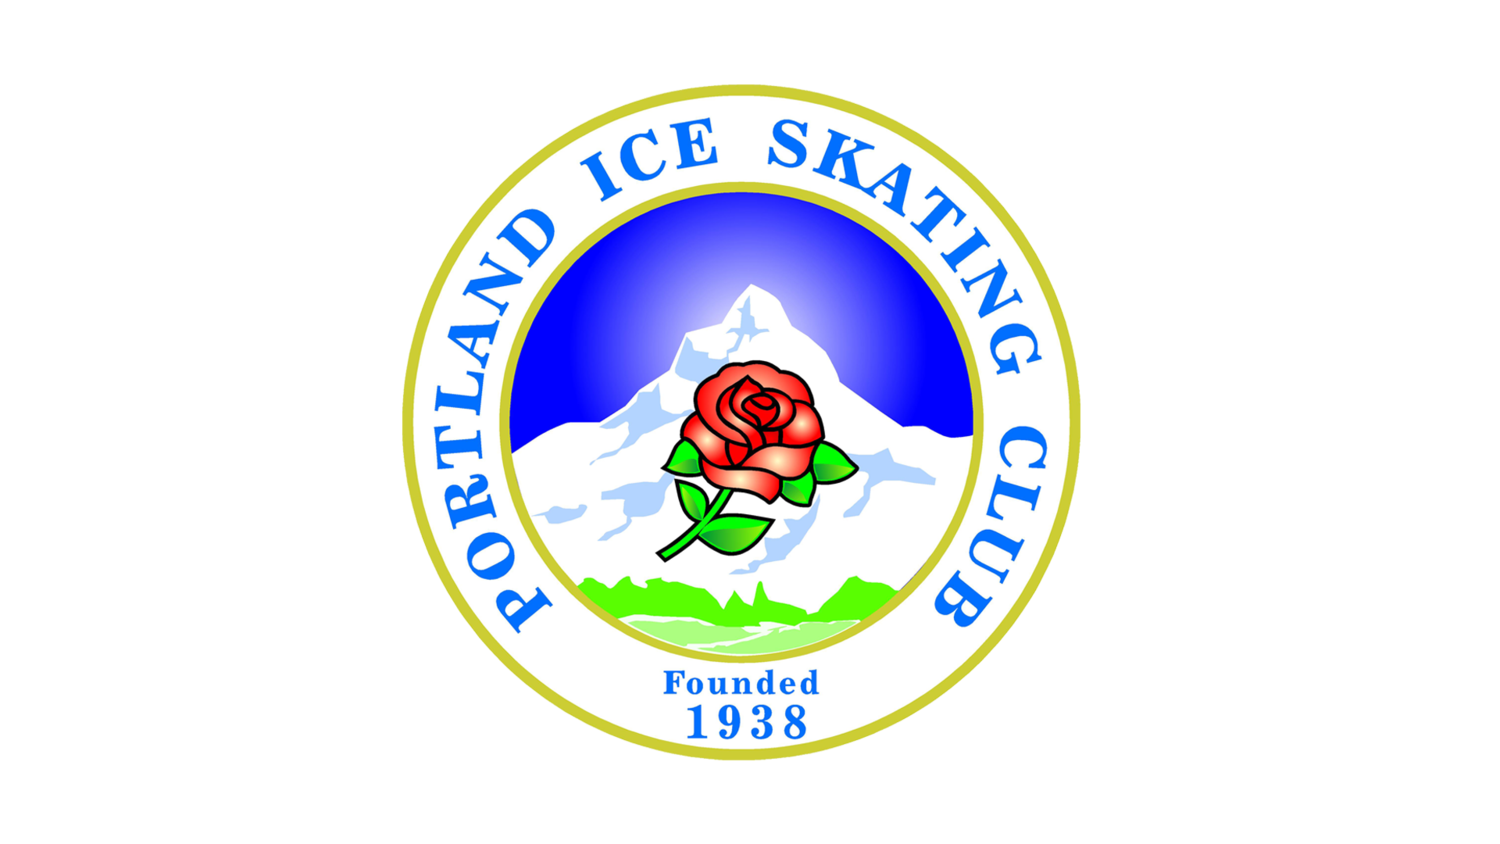 Portland Ice Skating Club